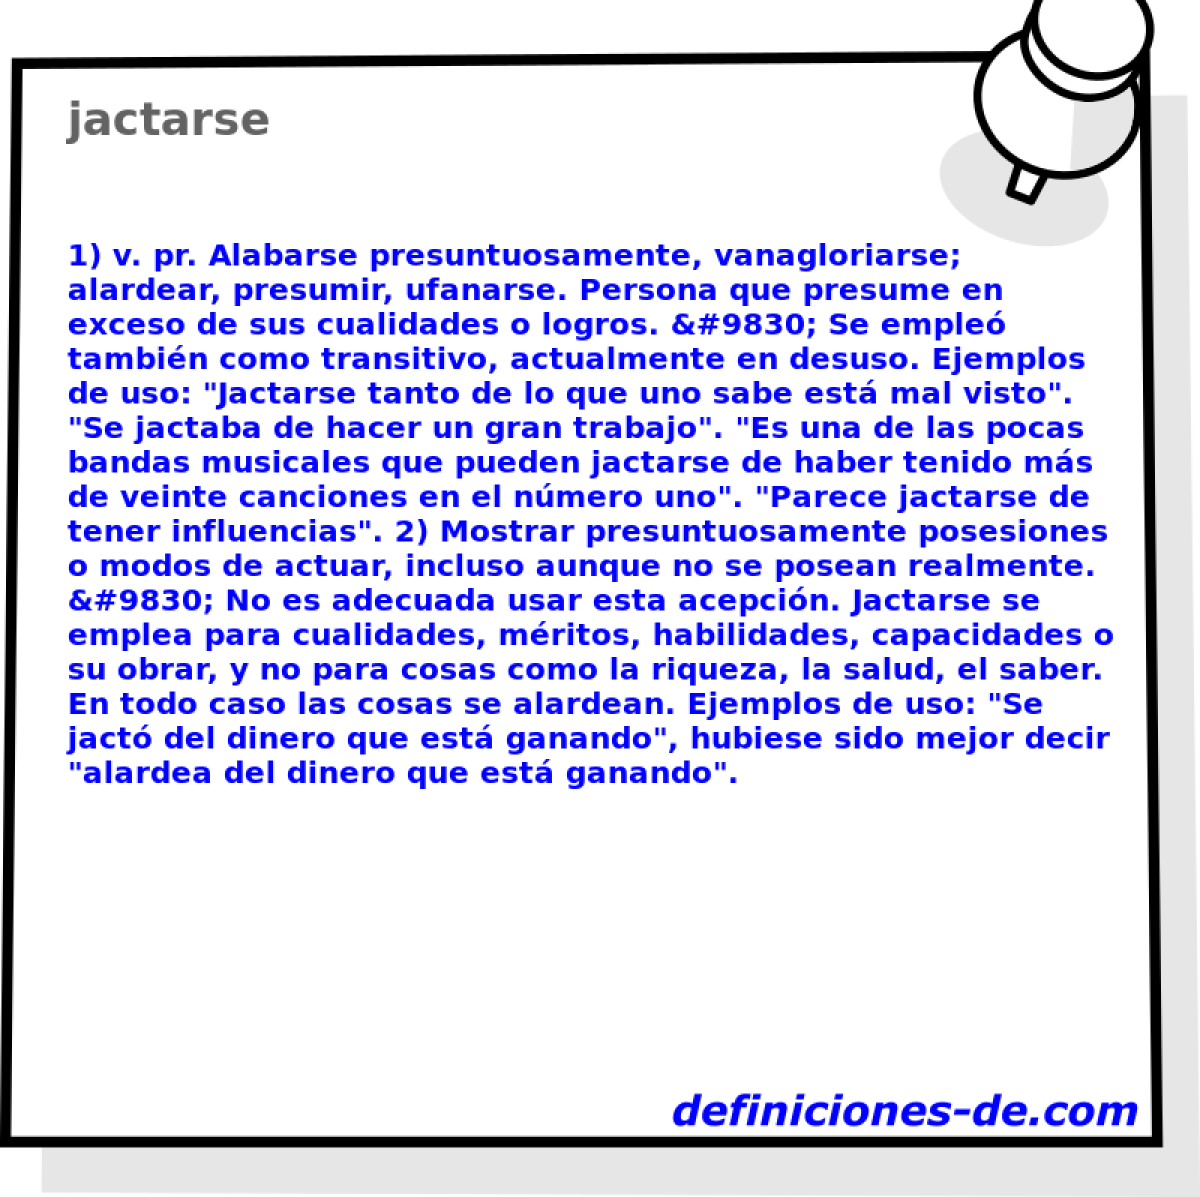 jactarse 